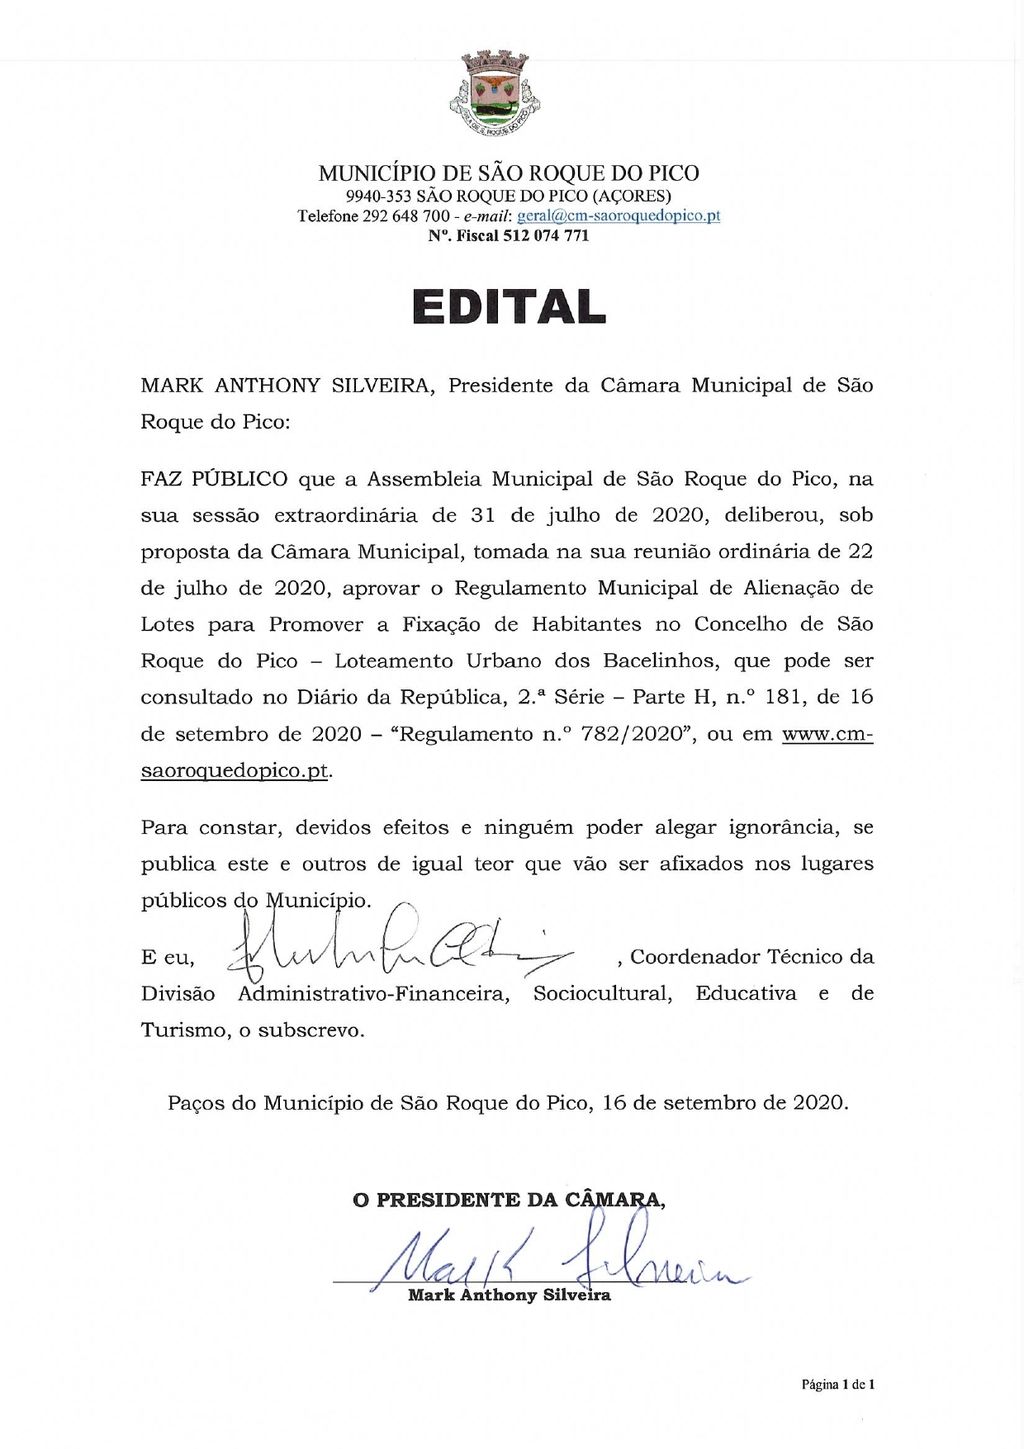 Regulamento Municipal para Alienação de Lotes Urbanos no lugar dos Bacelinhos, publicado em Diário da República